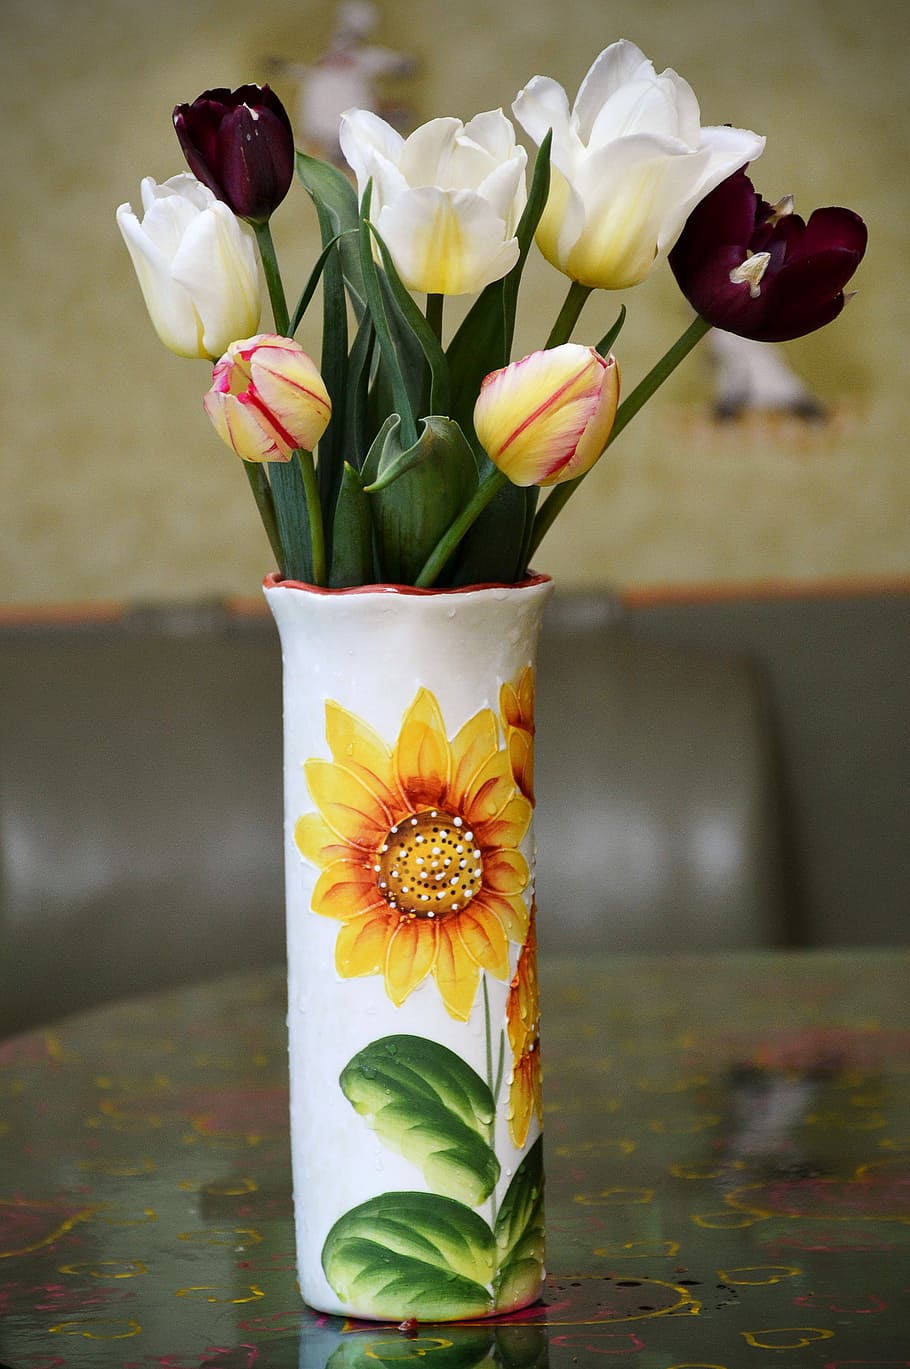 favorite, flowers, tulips, bouquet, vase, flowering plant, flower, freshness, fragility, plant